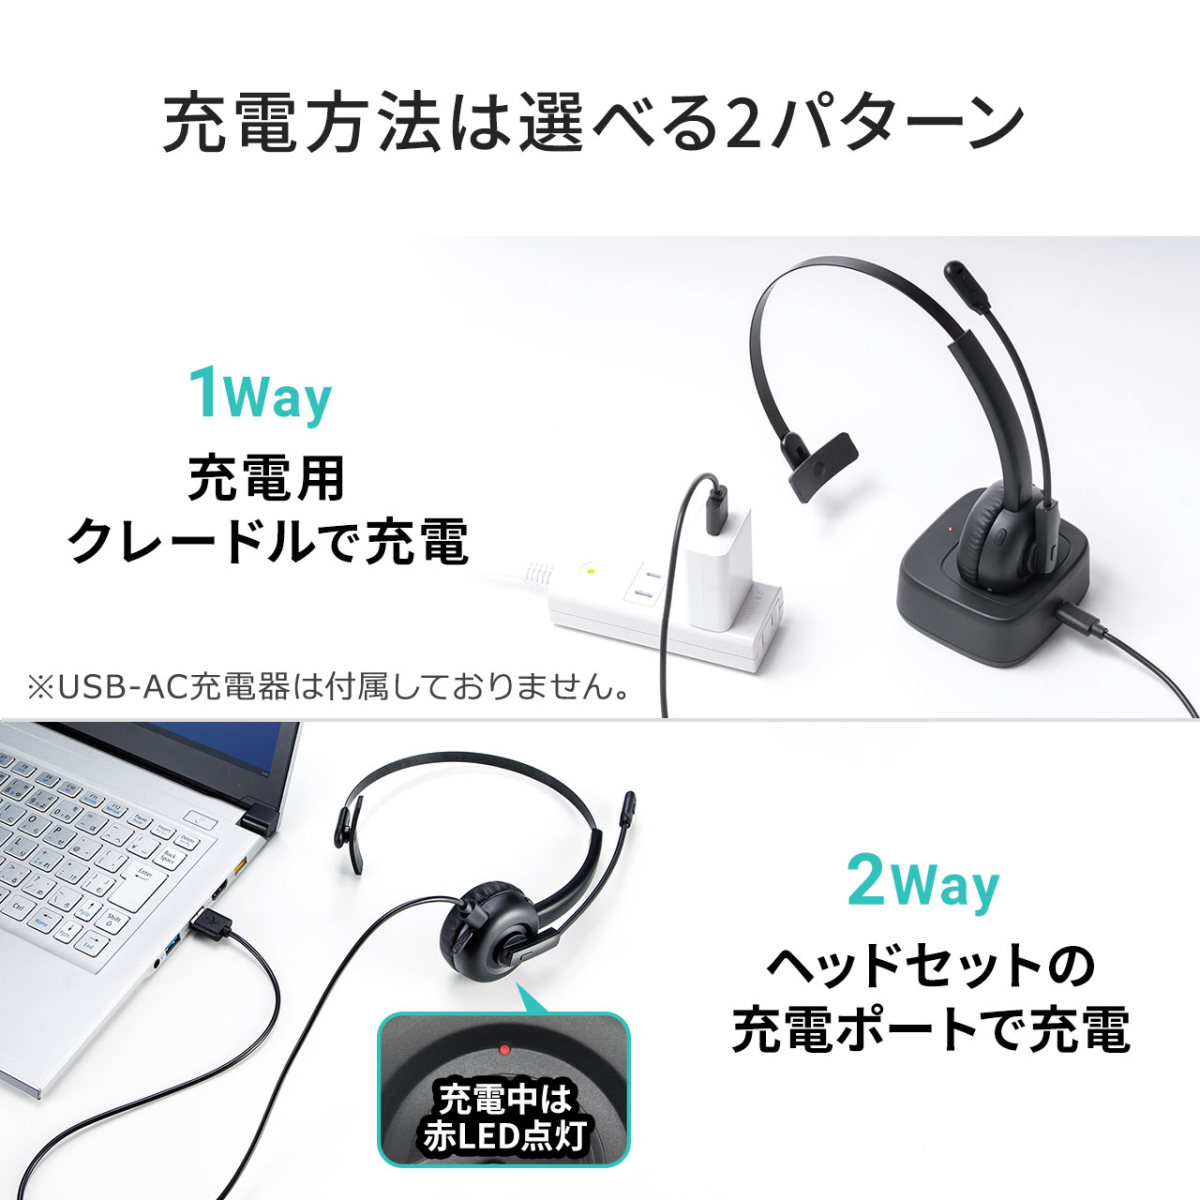 ヘッドセット Bluetooth ワイヤレス ヘッドホン マイク付き ミュート機能 充電台 電話対応 業務用 コールセンター用 スマホ 片耳 ヘッドセット 400-BTMH023BK